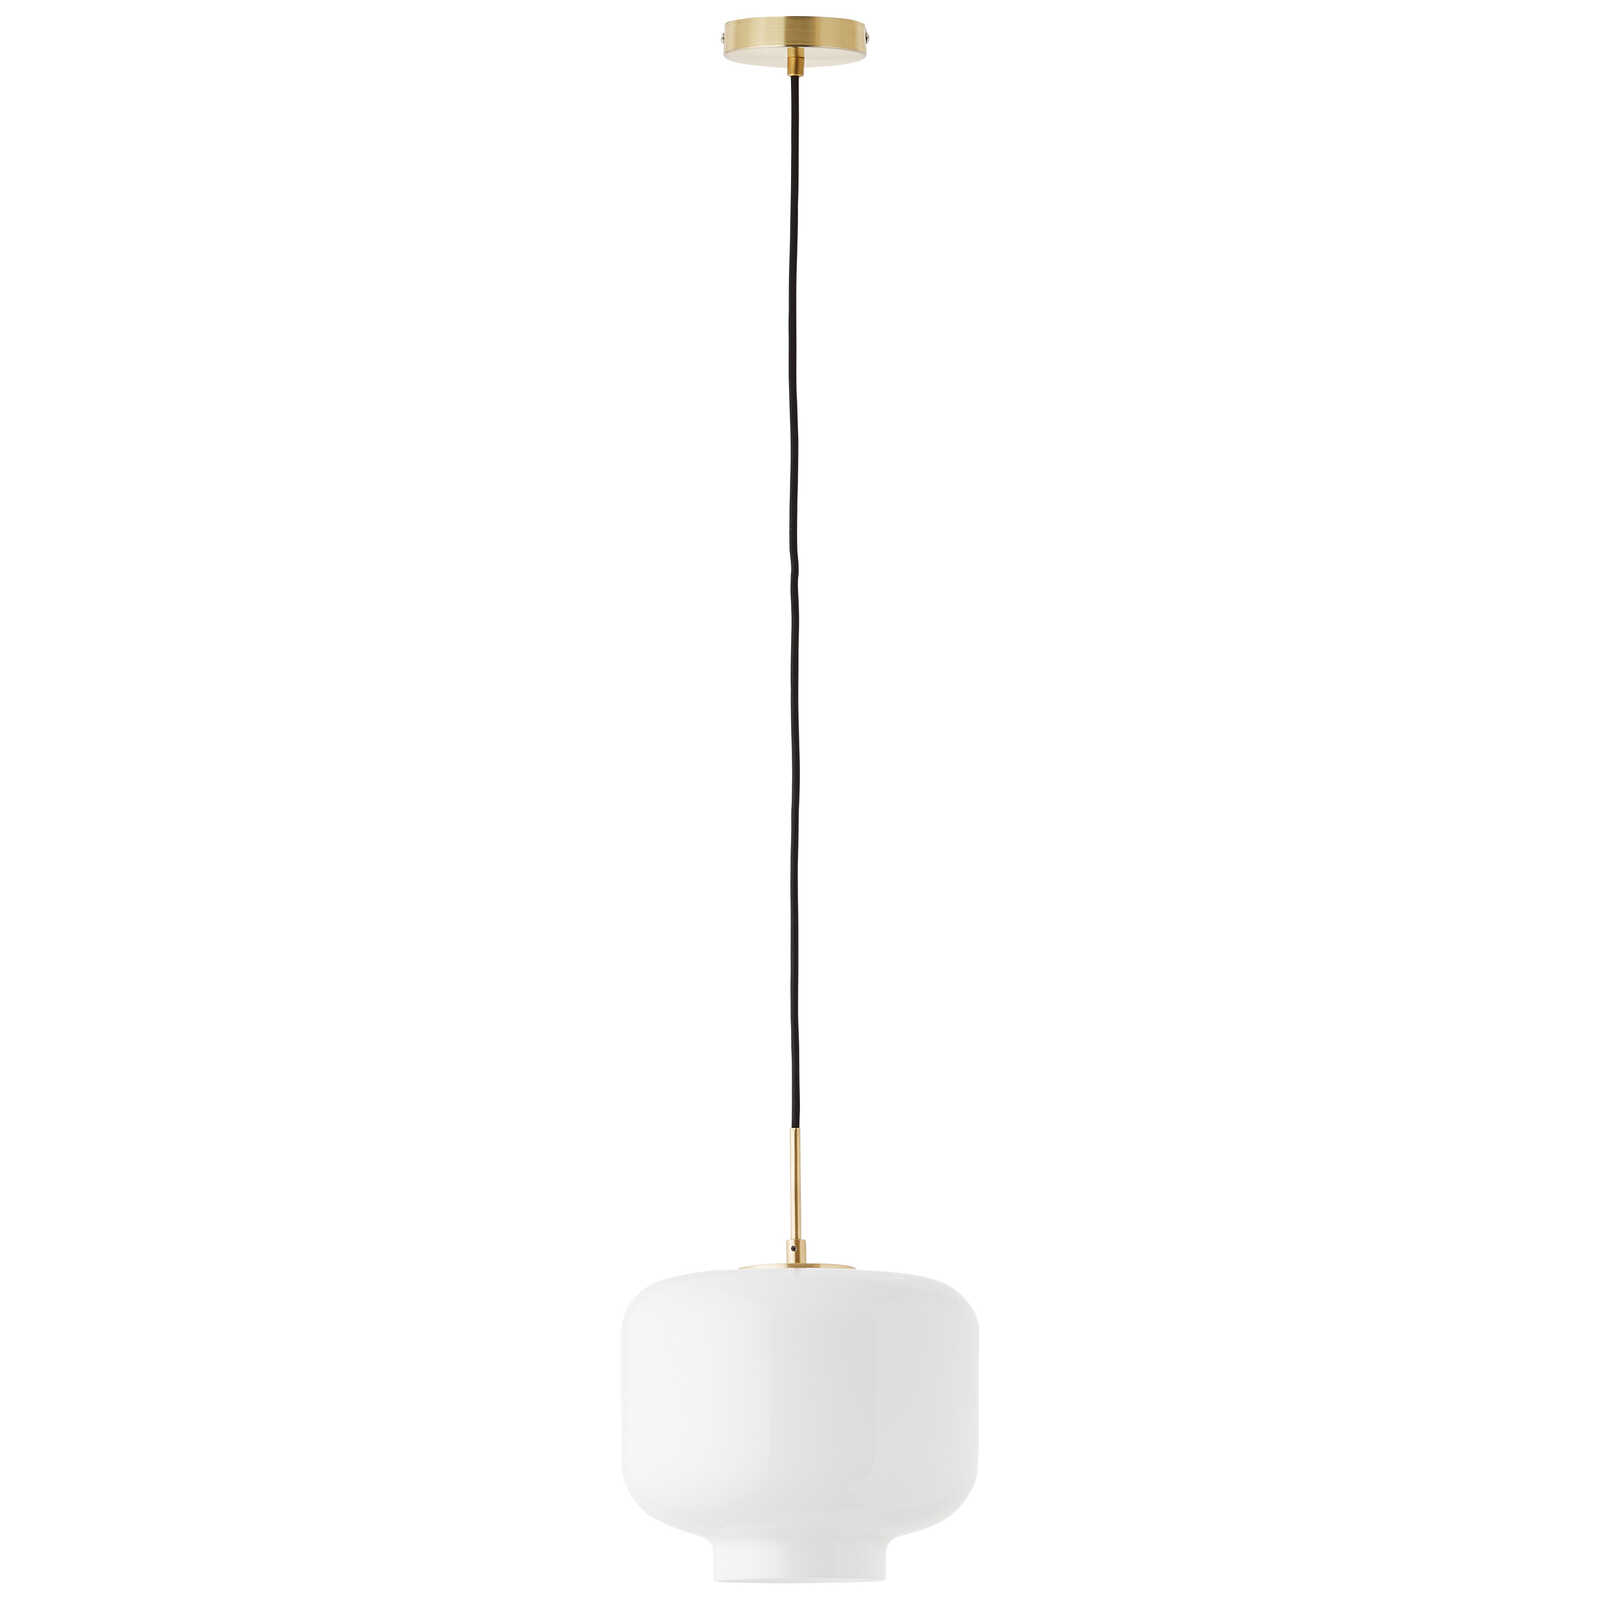             Lámpara colgante de cristal - Keno 1 - Oro
        